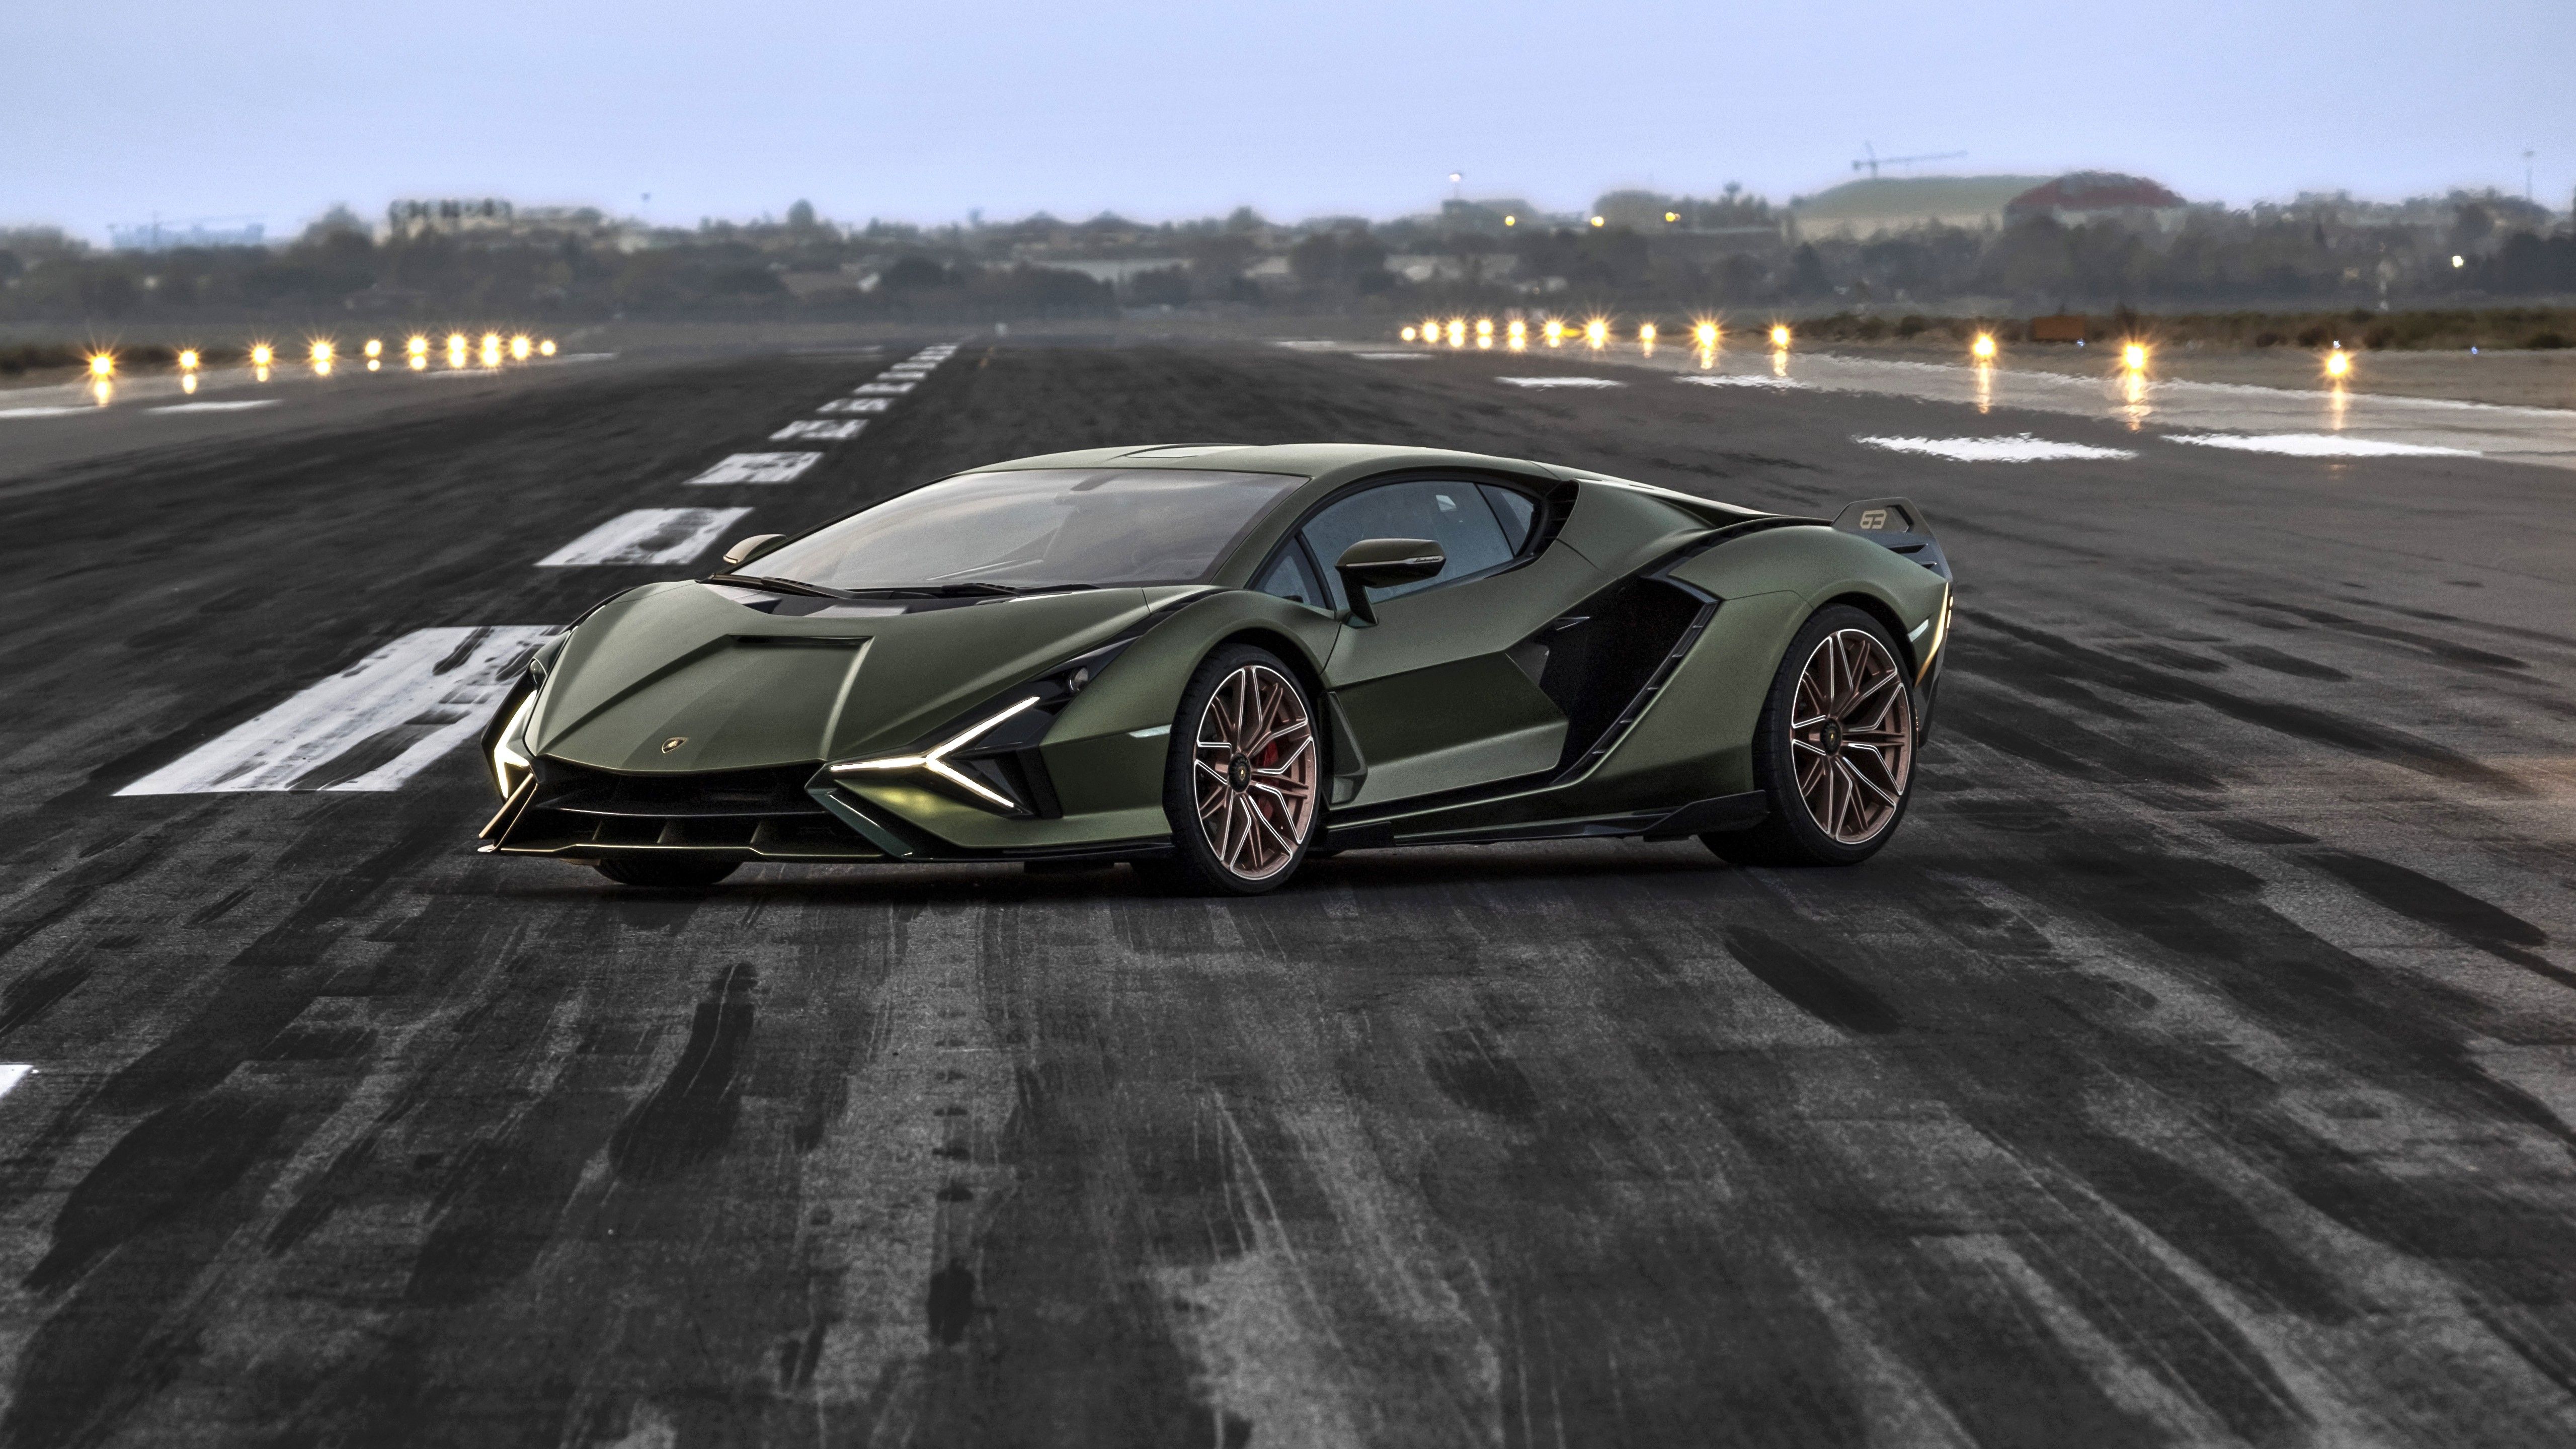 Lamborghini Sian FKP 37 2021 8 4K 5K HD Cars Wallpaper